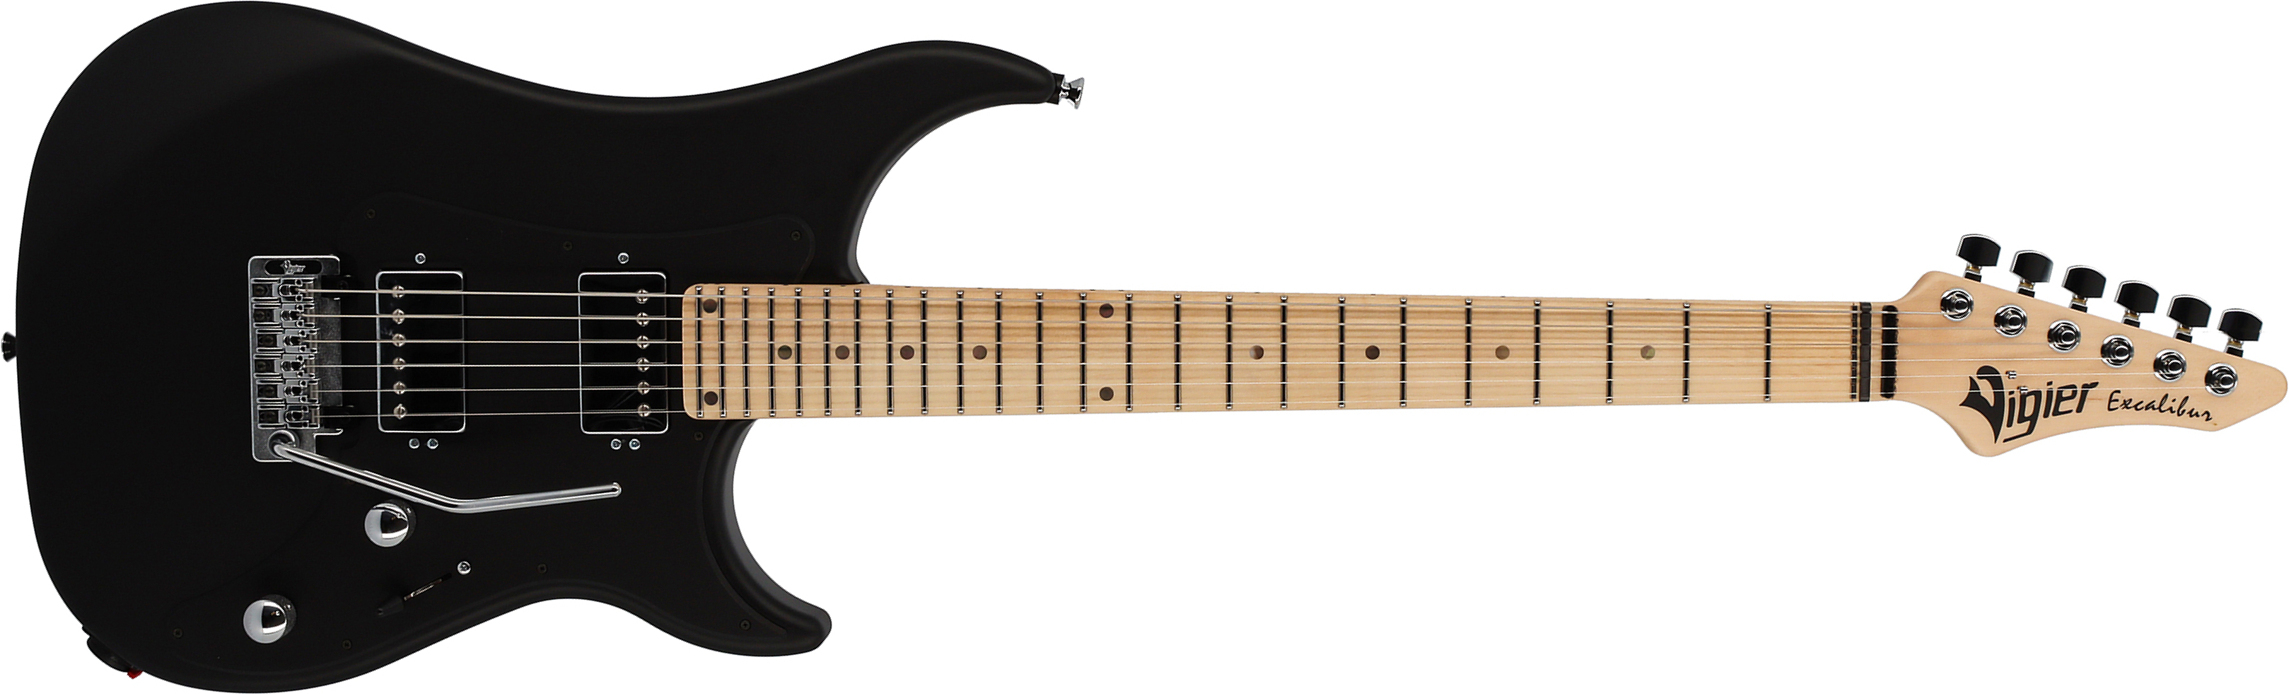 Vigier Excalibur Indus 2h Trem Mn - Black Matte - Guitarra eléctrica de doble corte - Main picture